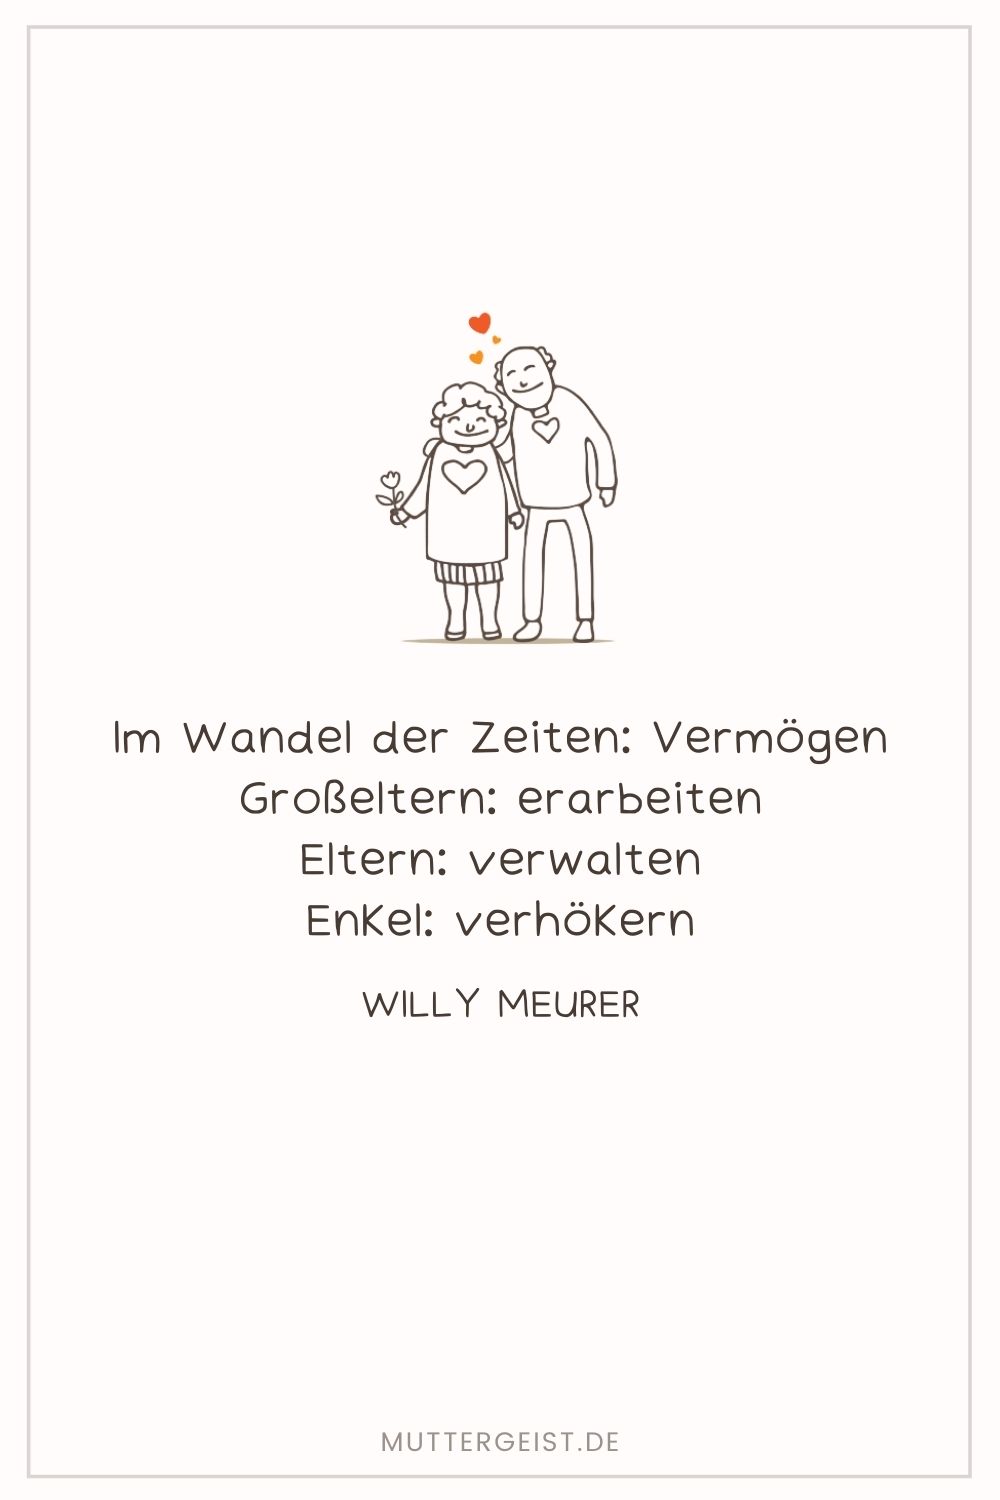 Aphorismen von Willy Meurer über Großeltern